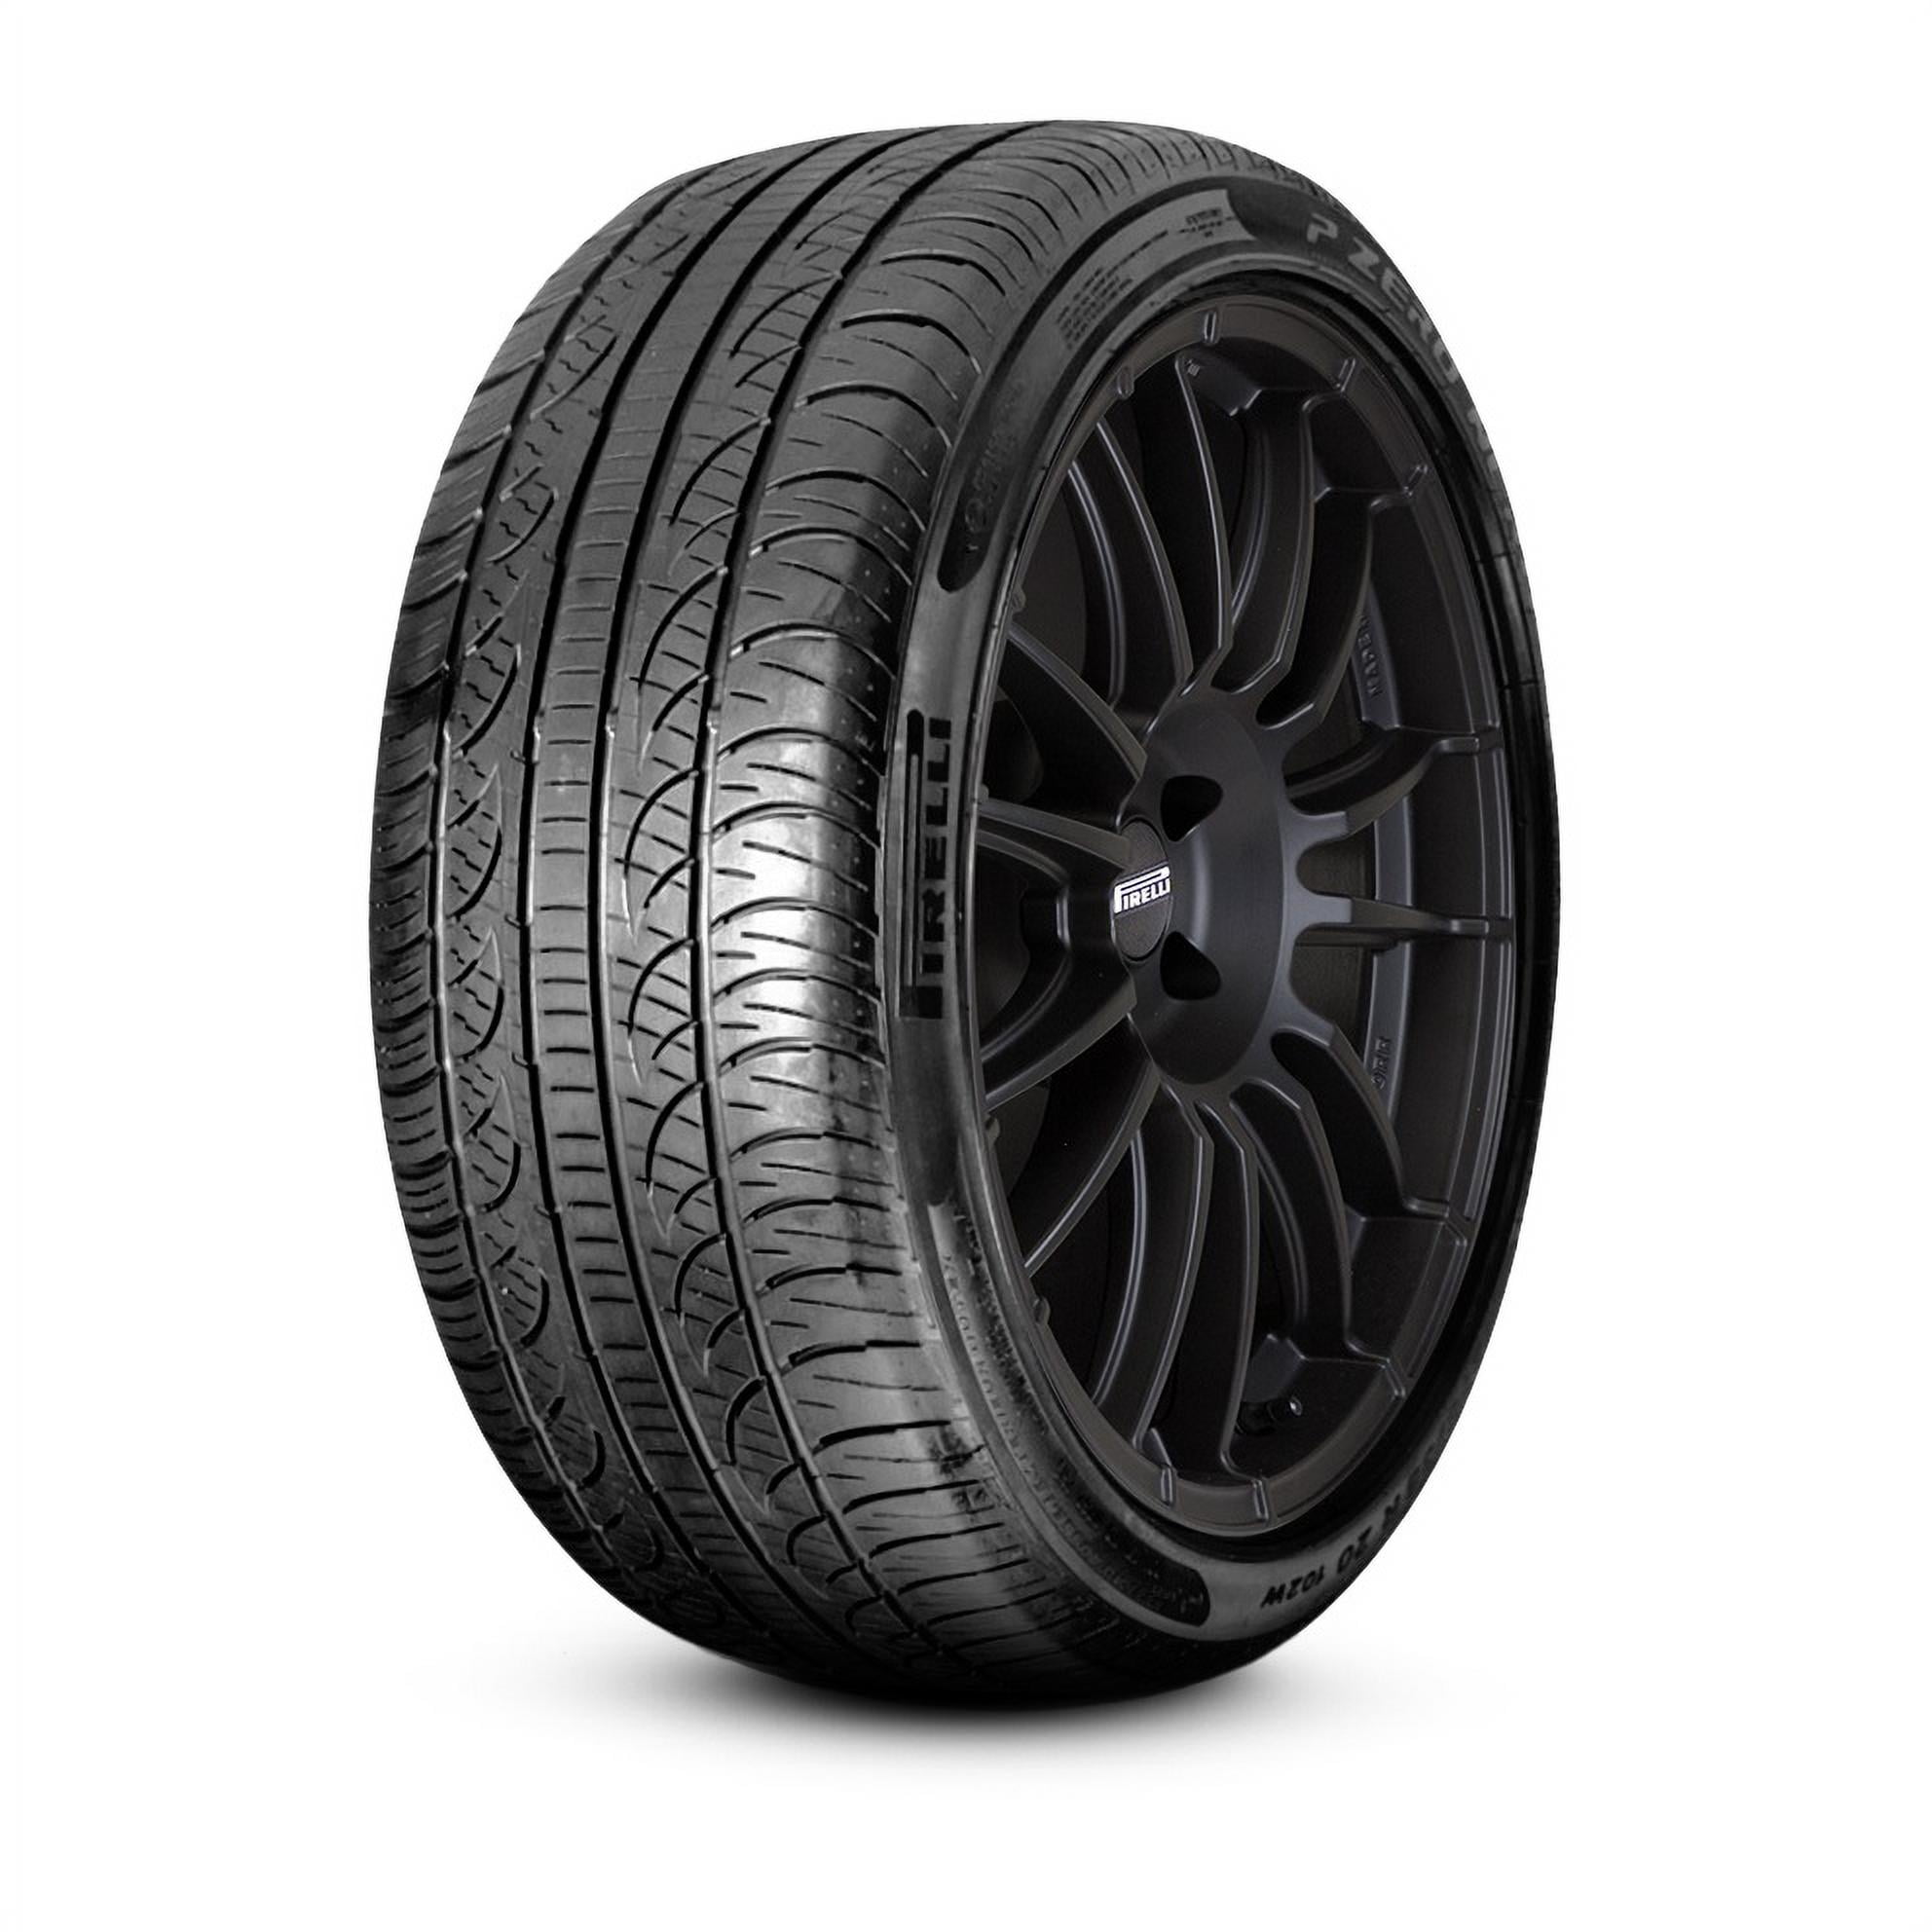 Pirelli P Zero Nero All Season 265/40-20 104 H Tire